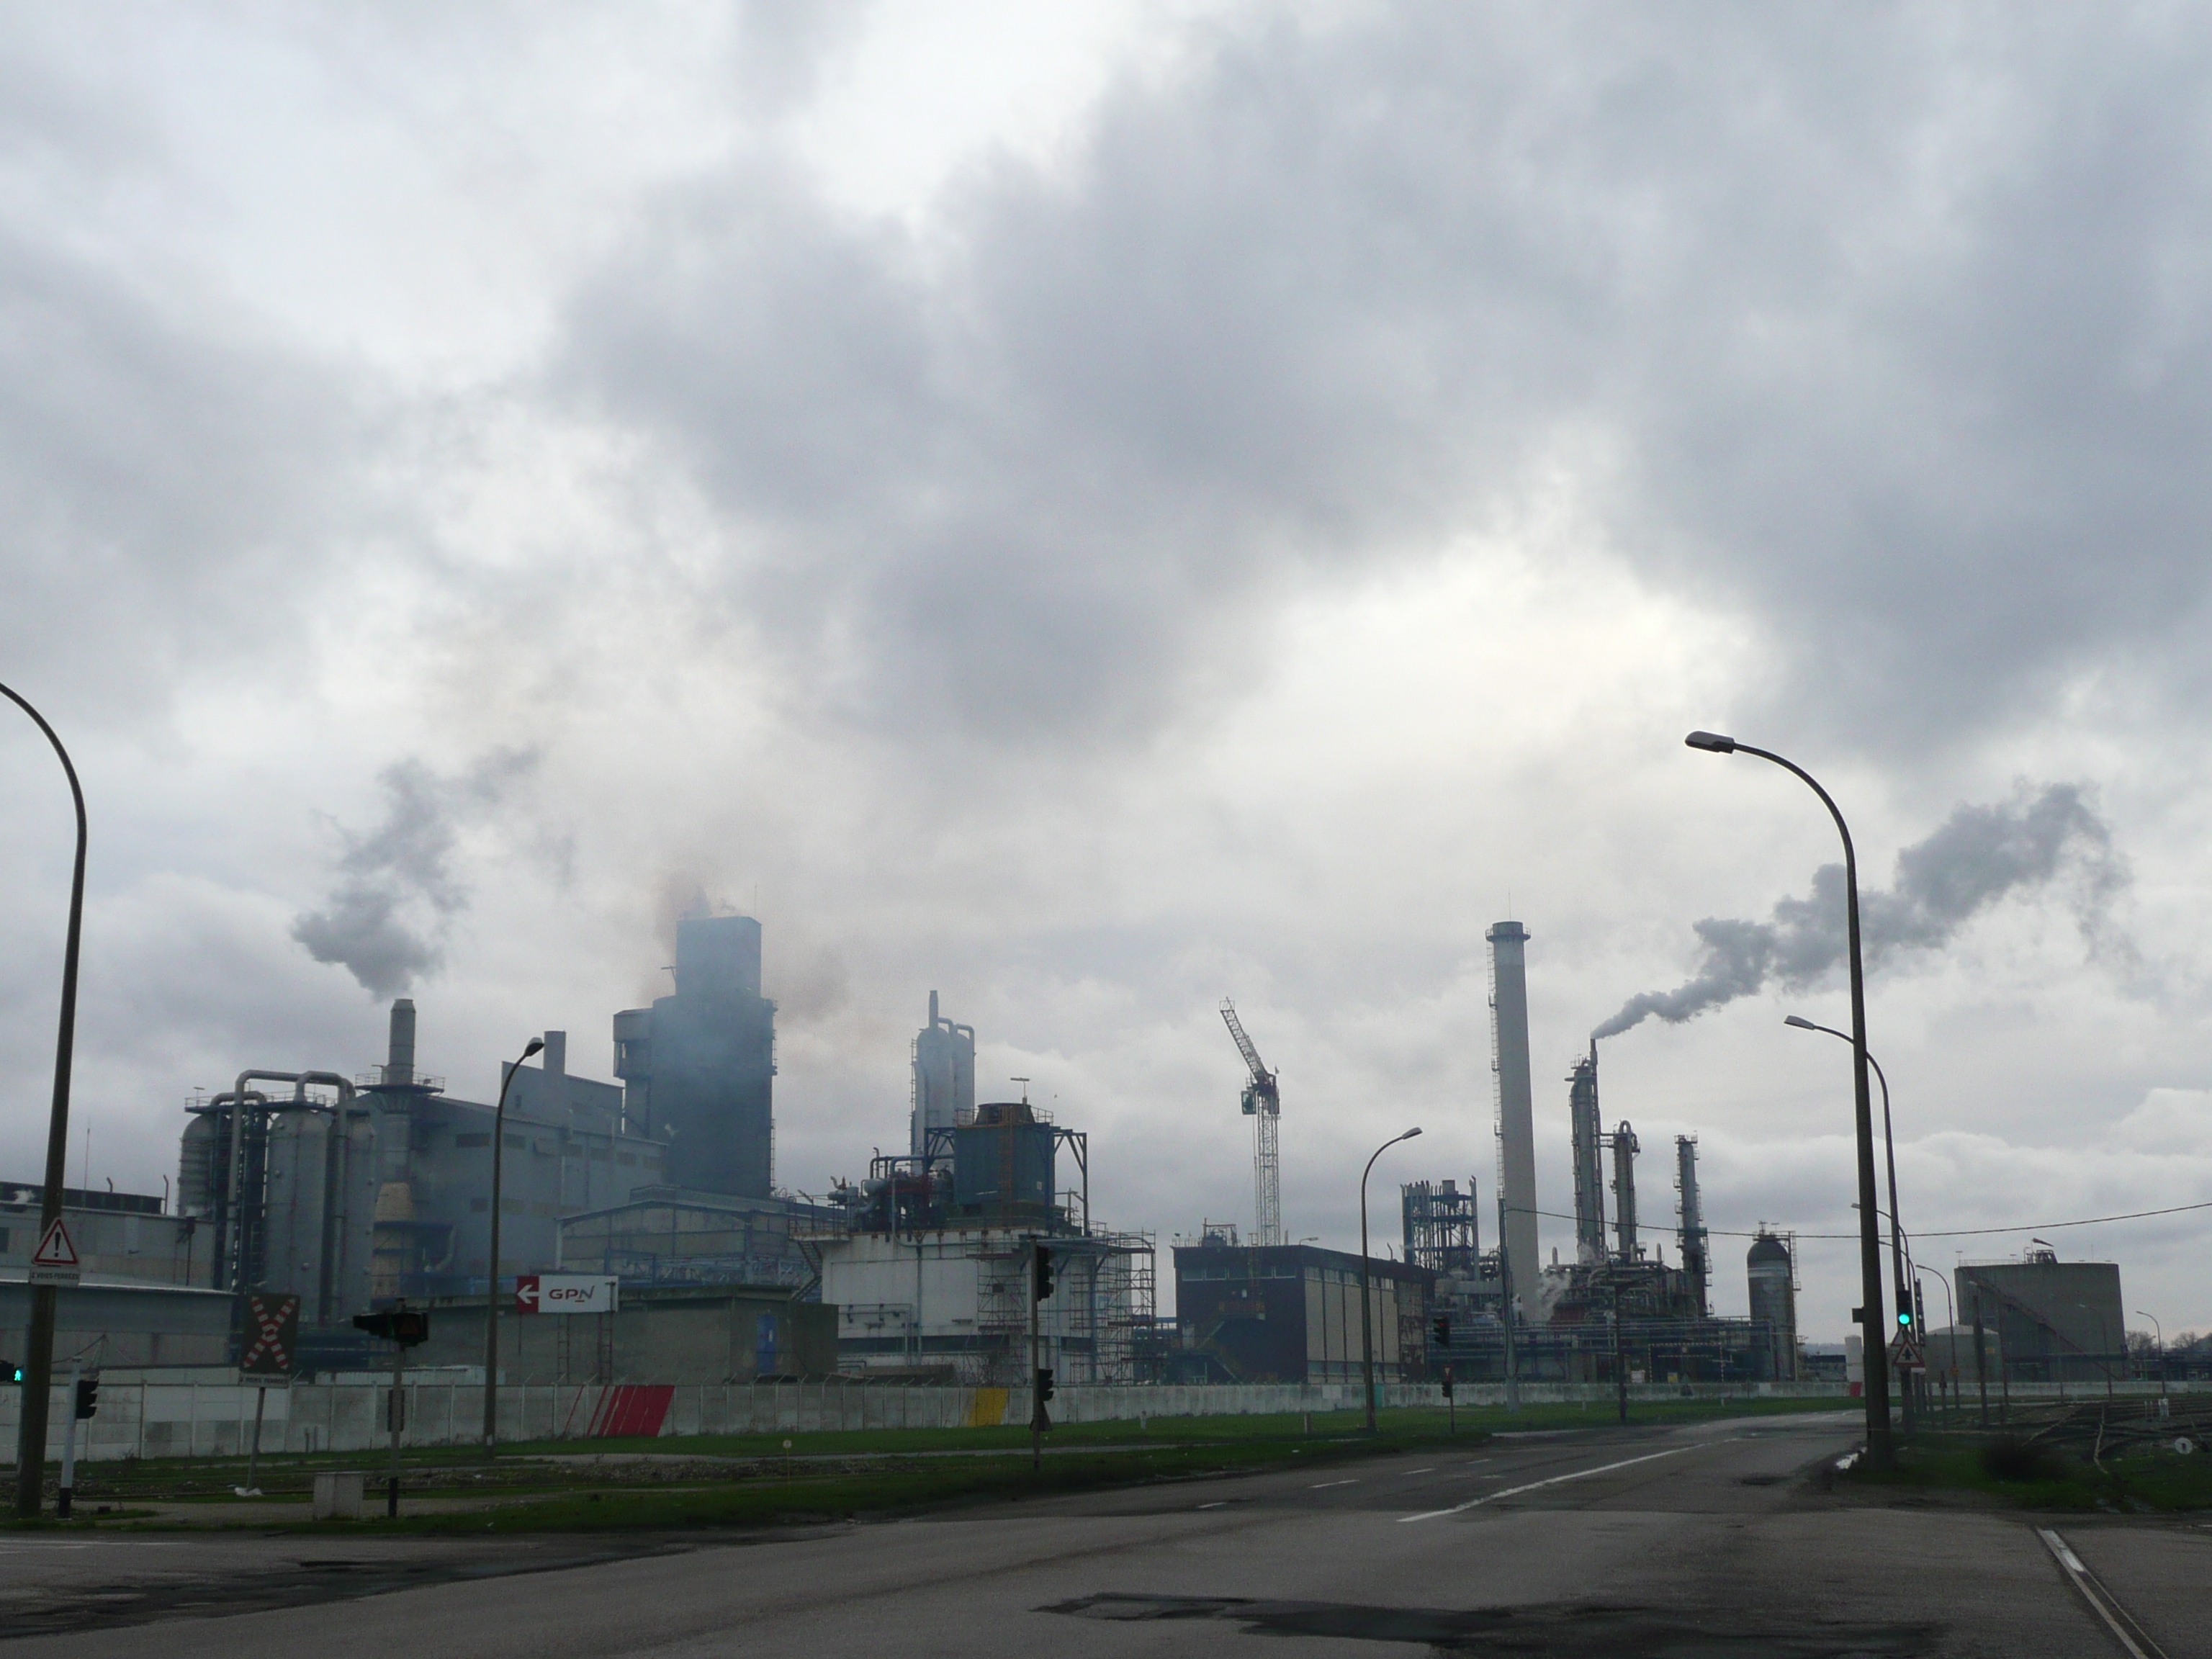 Les autorités préfectorales recommandent aux industriels de s'assurer du bon état et du bon fonctionnement des installations de combustion et des dispositifs antipollution  (Illustration@infonormandie)